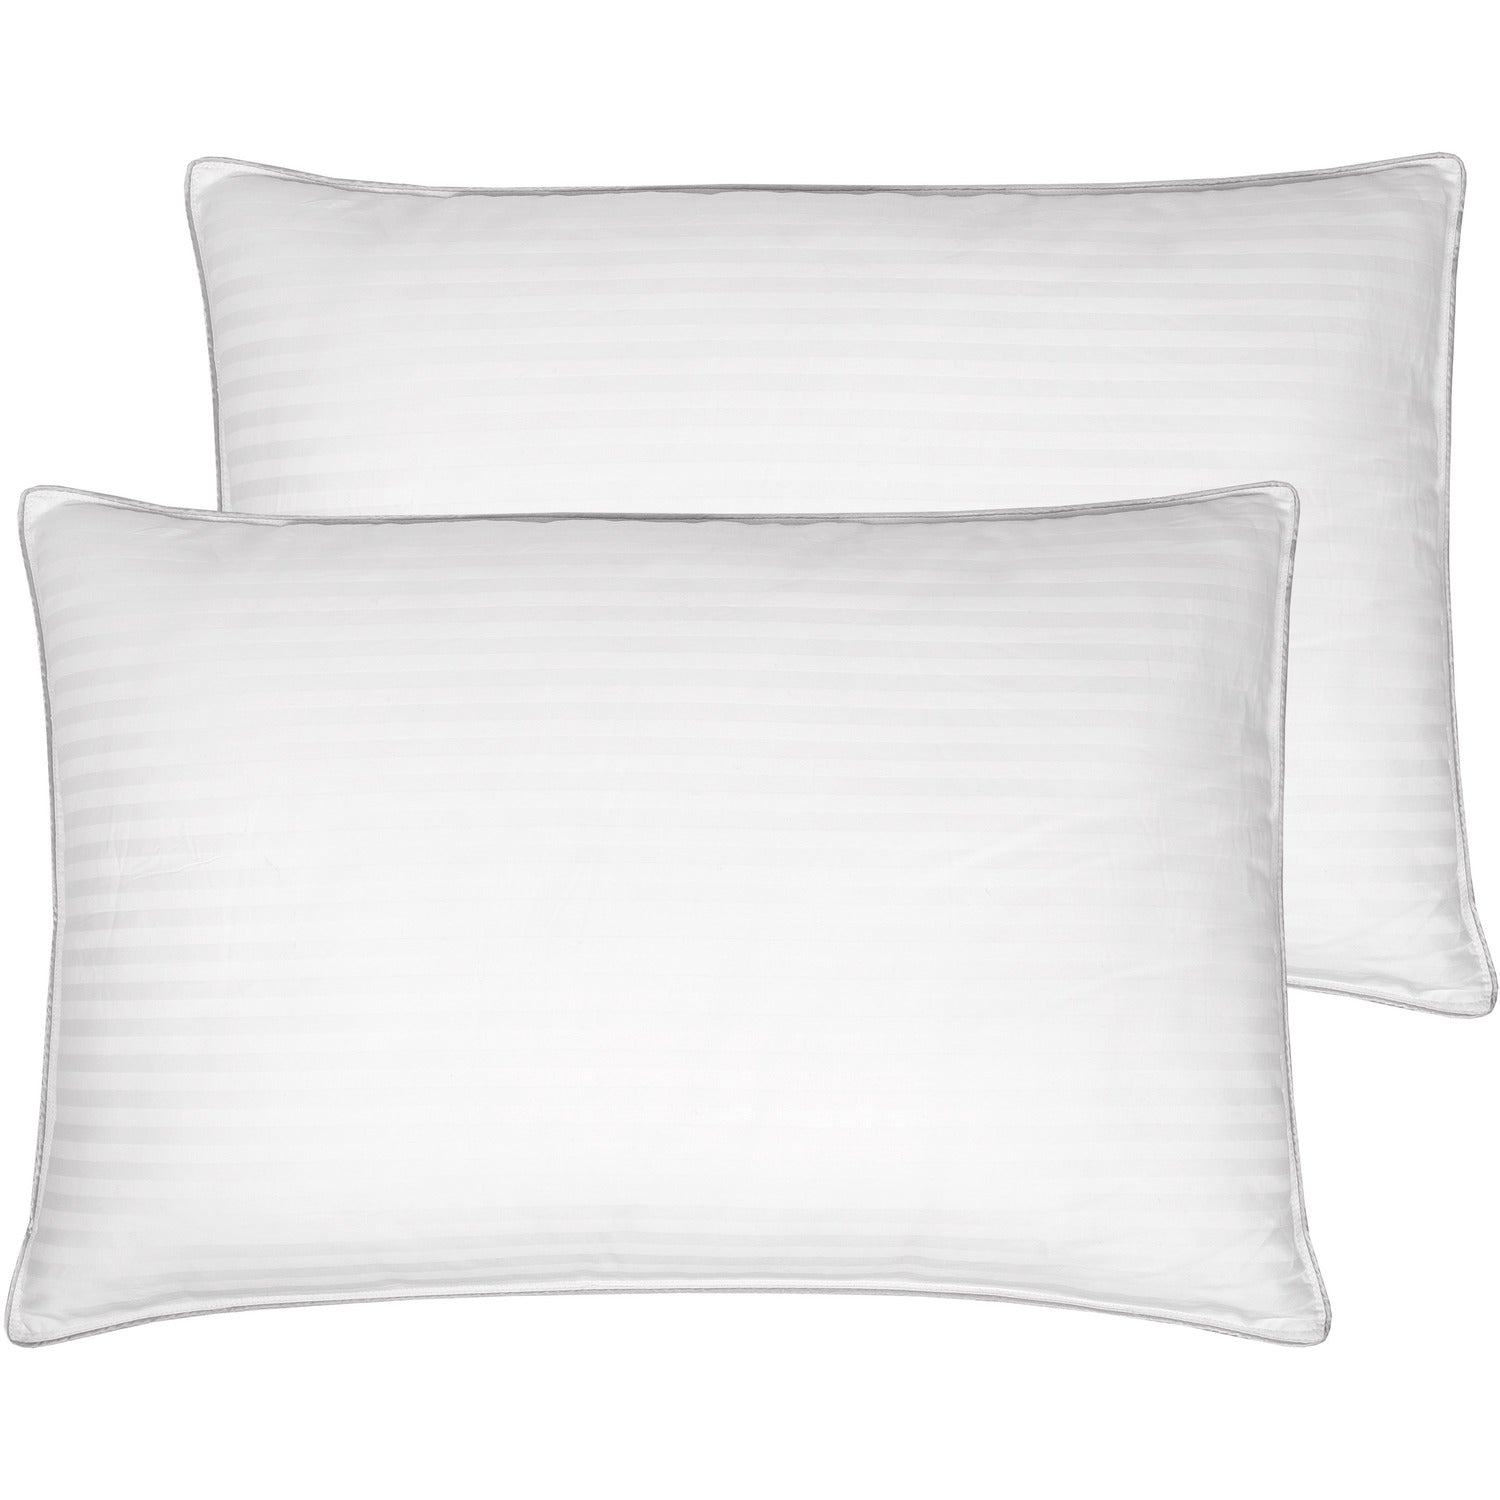 Ball Fiber Dobby Stripe Pillow 2-Pack - Top